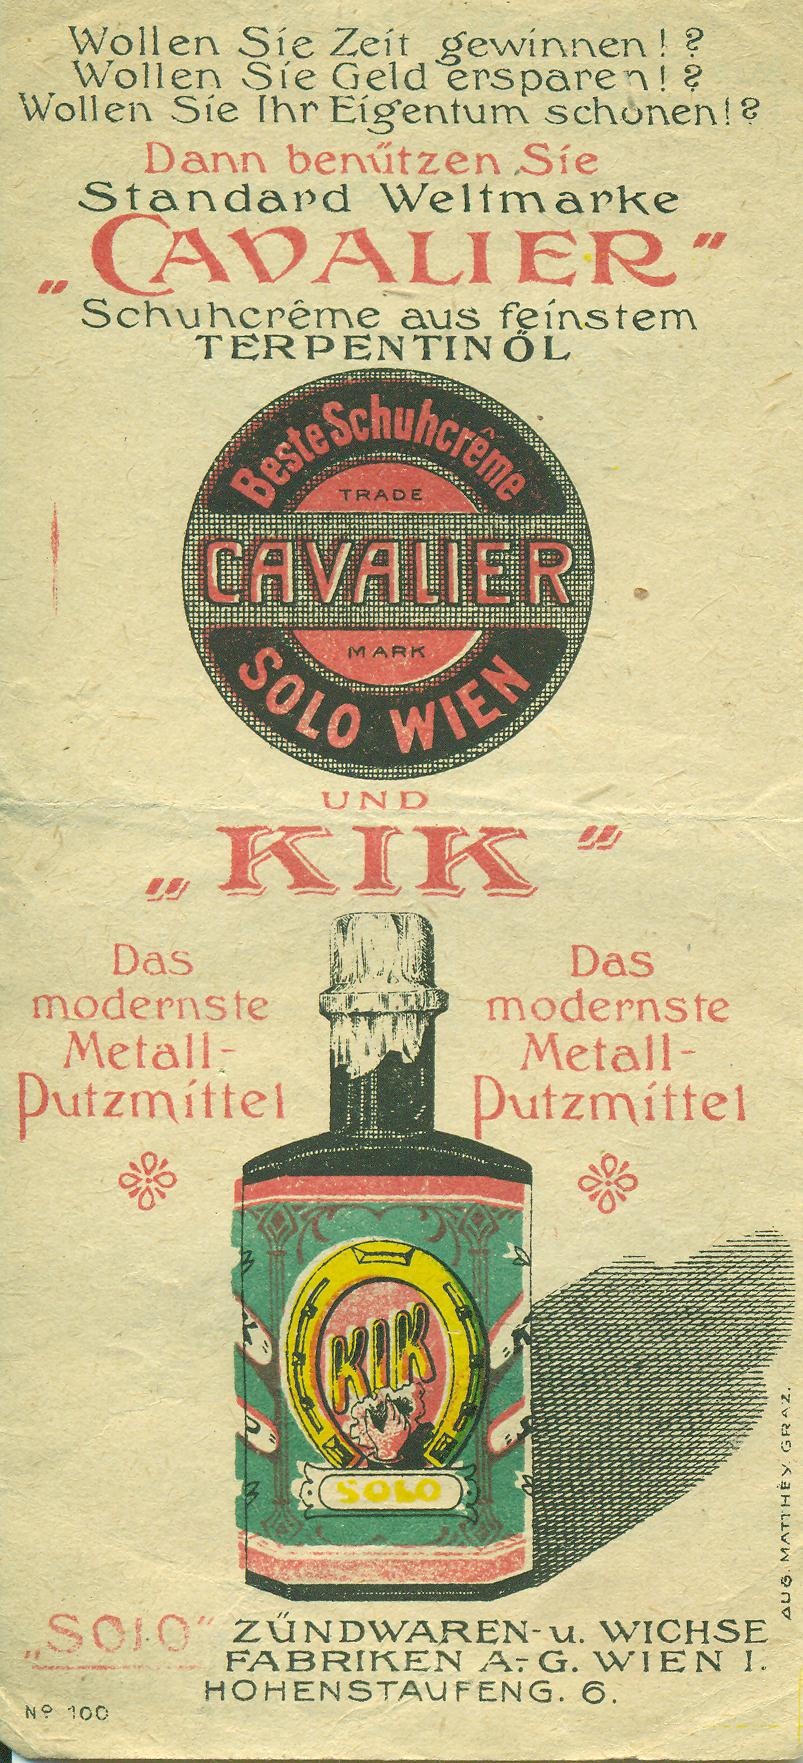 Cavalier Schuhcréme und KIK Metall-Putzmittel (Magyar Kereskedelmi és Vendéglátóipari Múzeum CC BY-NC-SA)